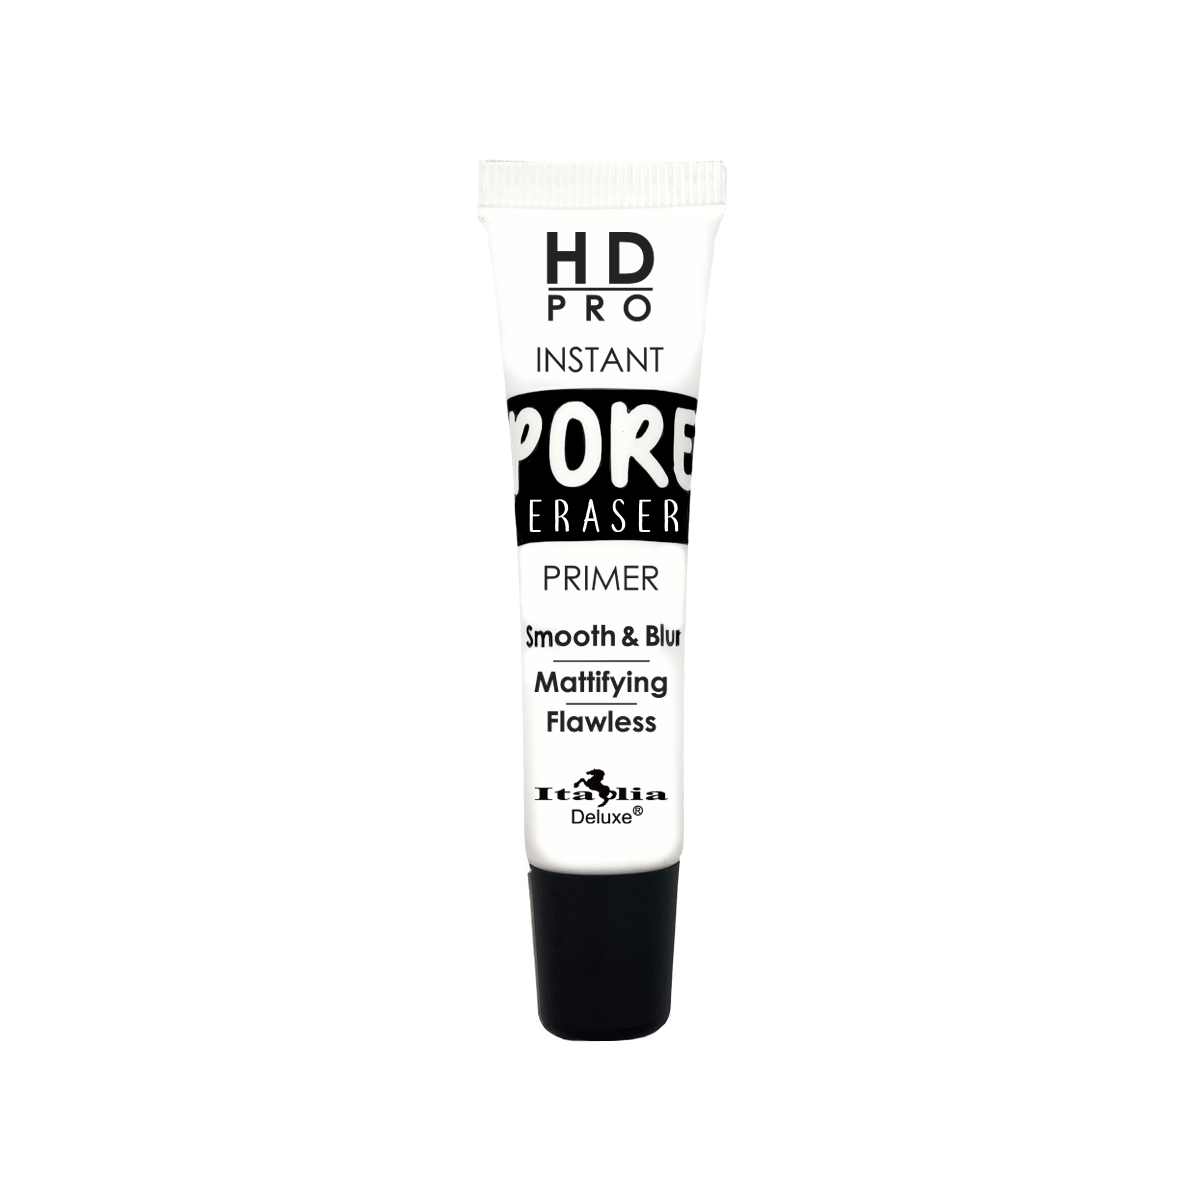 HD Pro Instant Pore Eraser Primer